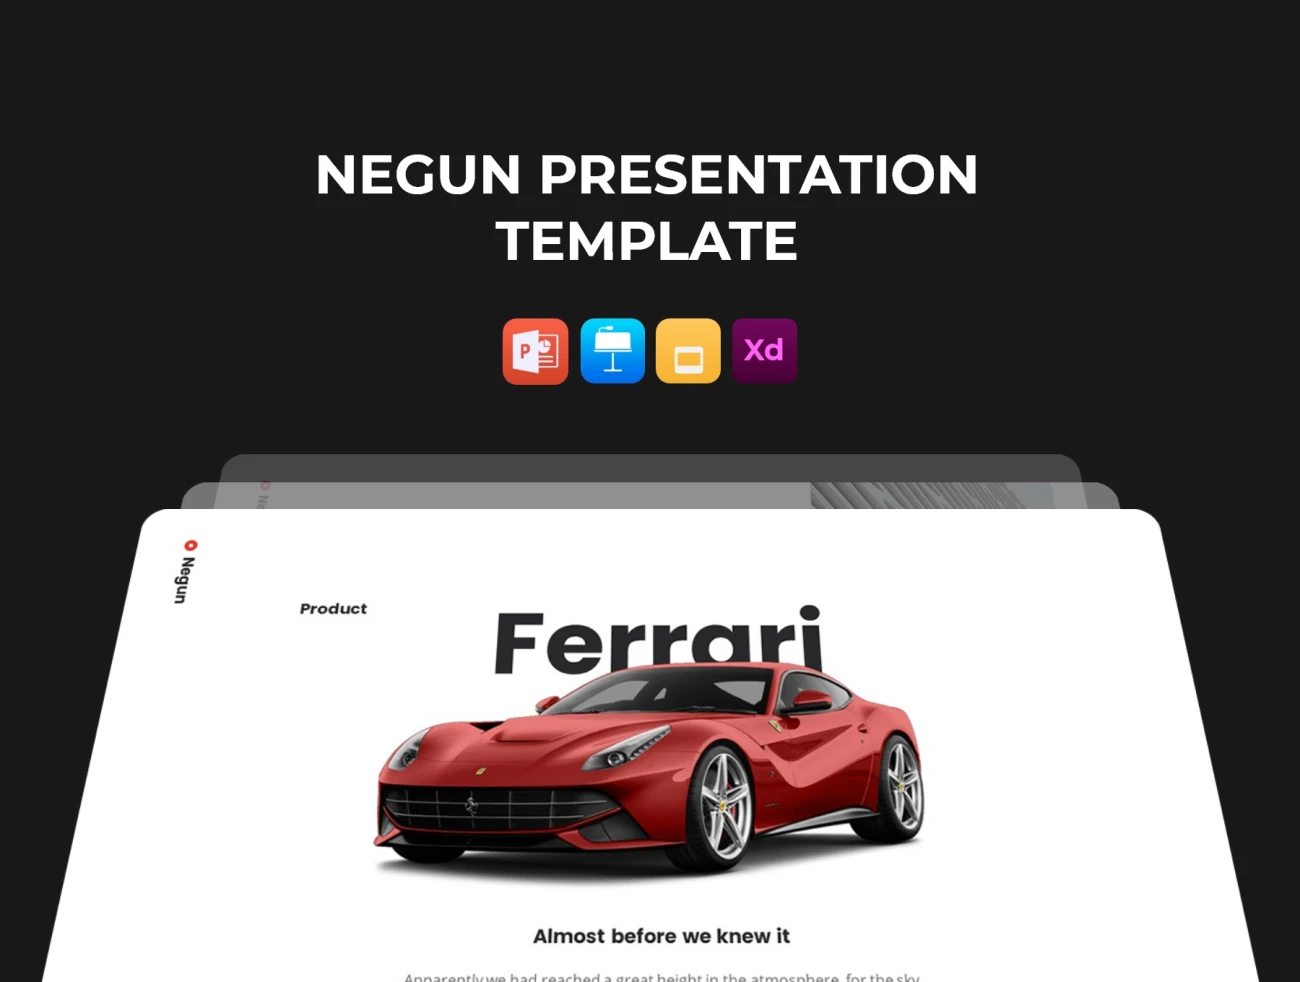 Negun - Smooth Animated Template 100张运用平滑动画的幻灯片模板-PPT素材-到位啦UI